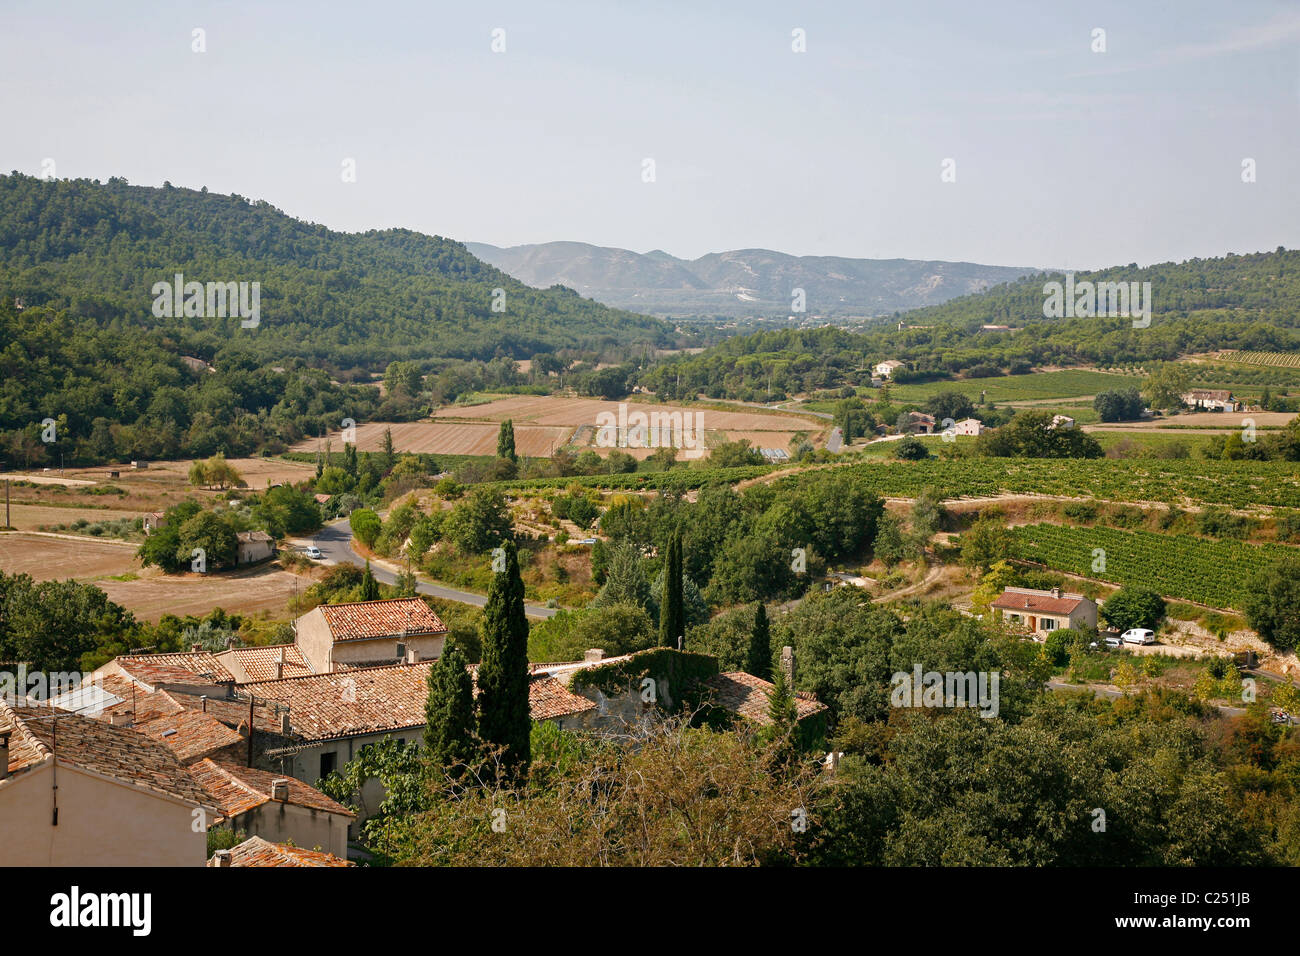 Paysage dans la région des collines du Luberon vu d'Ansouis, Vaucluse, Provence, France. Banque D'Images